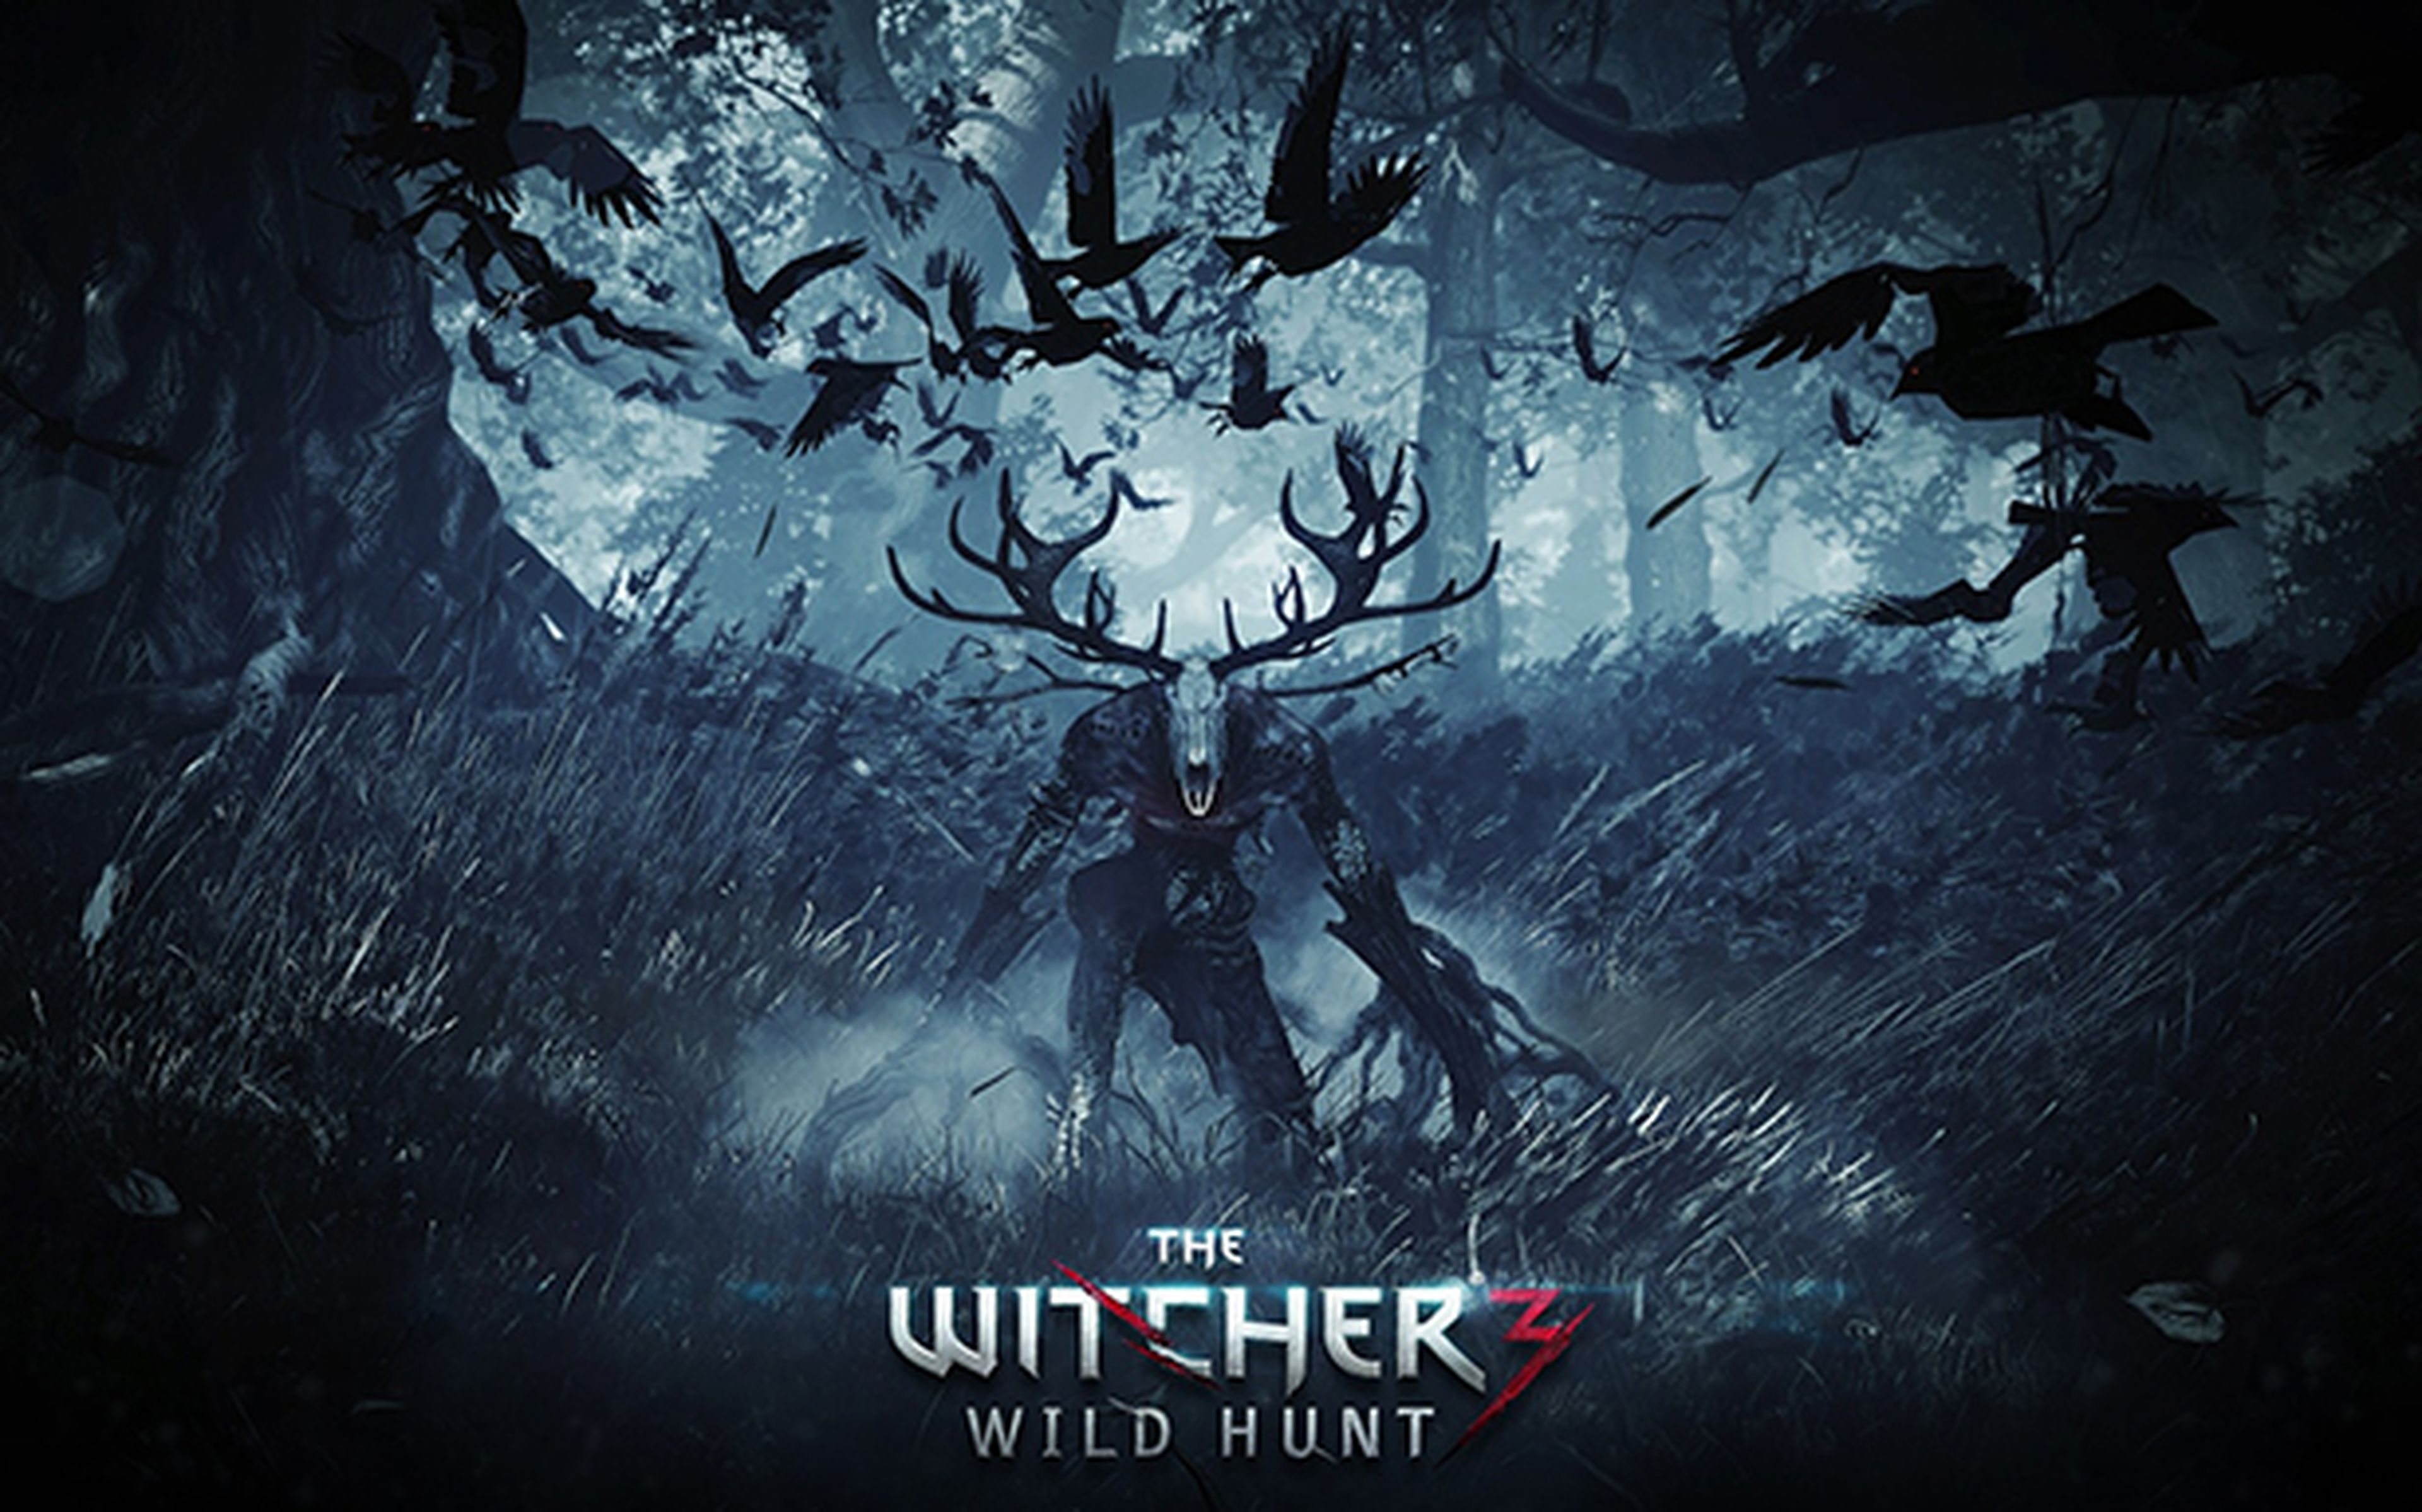 CD Projekt mostrará el vídeo de introducción de The Witcher III la semana que viene